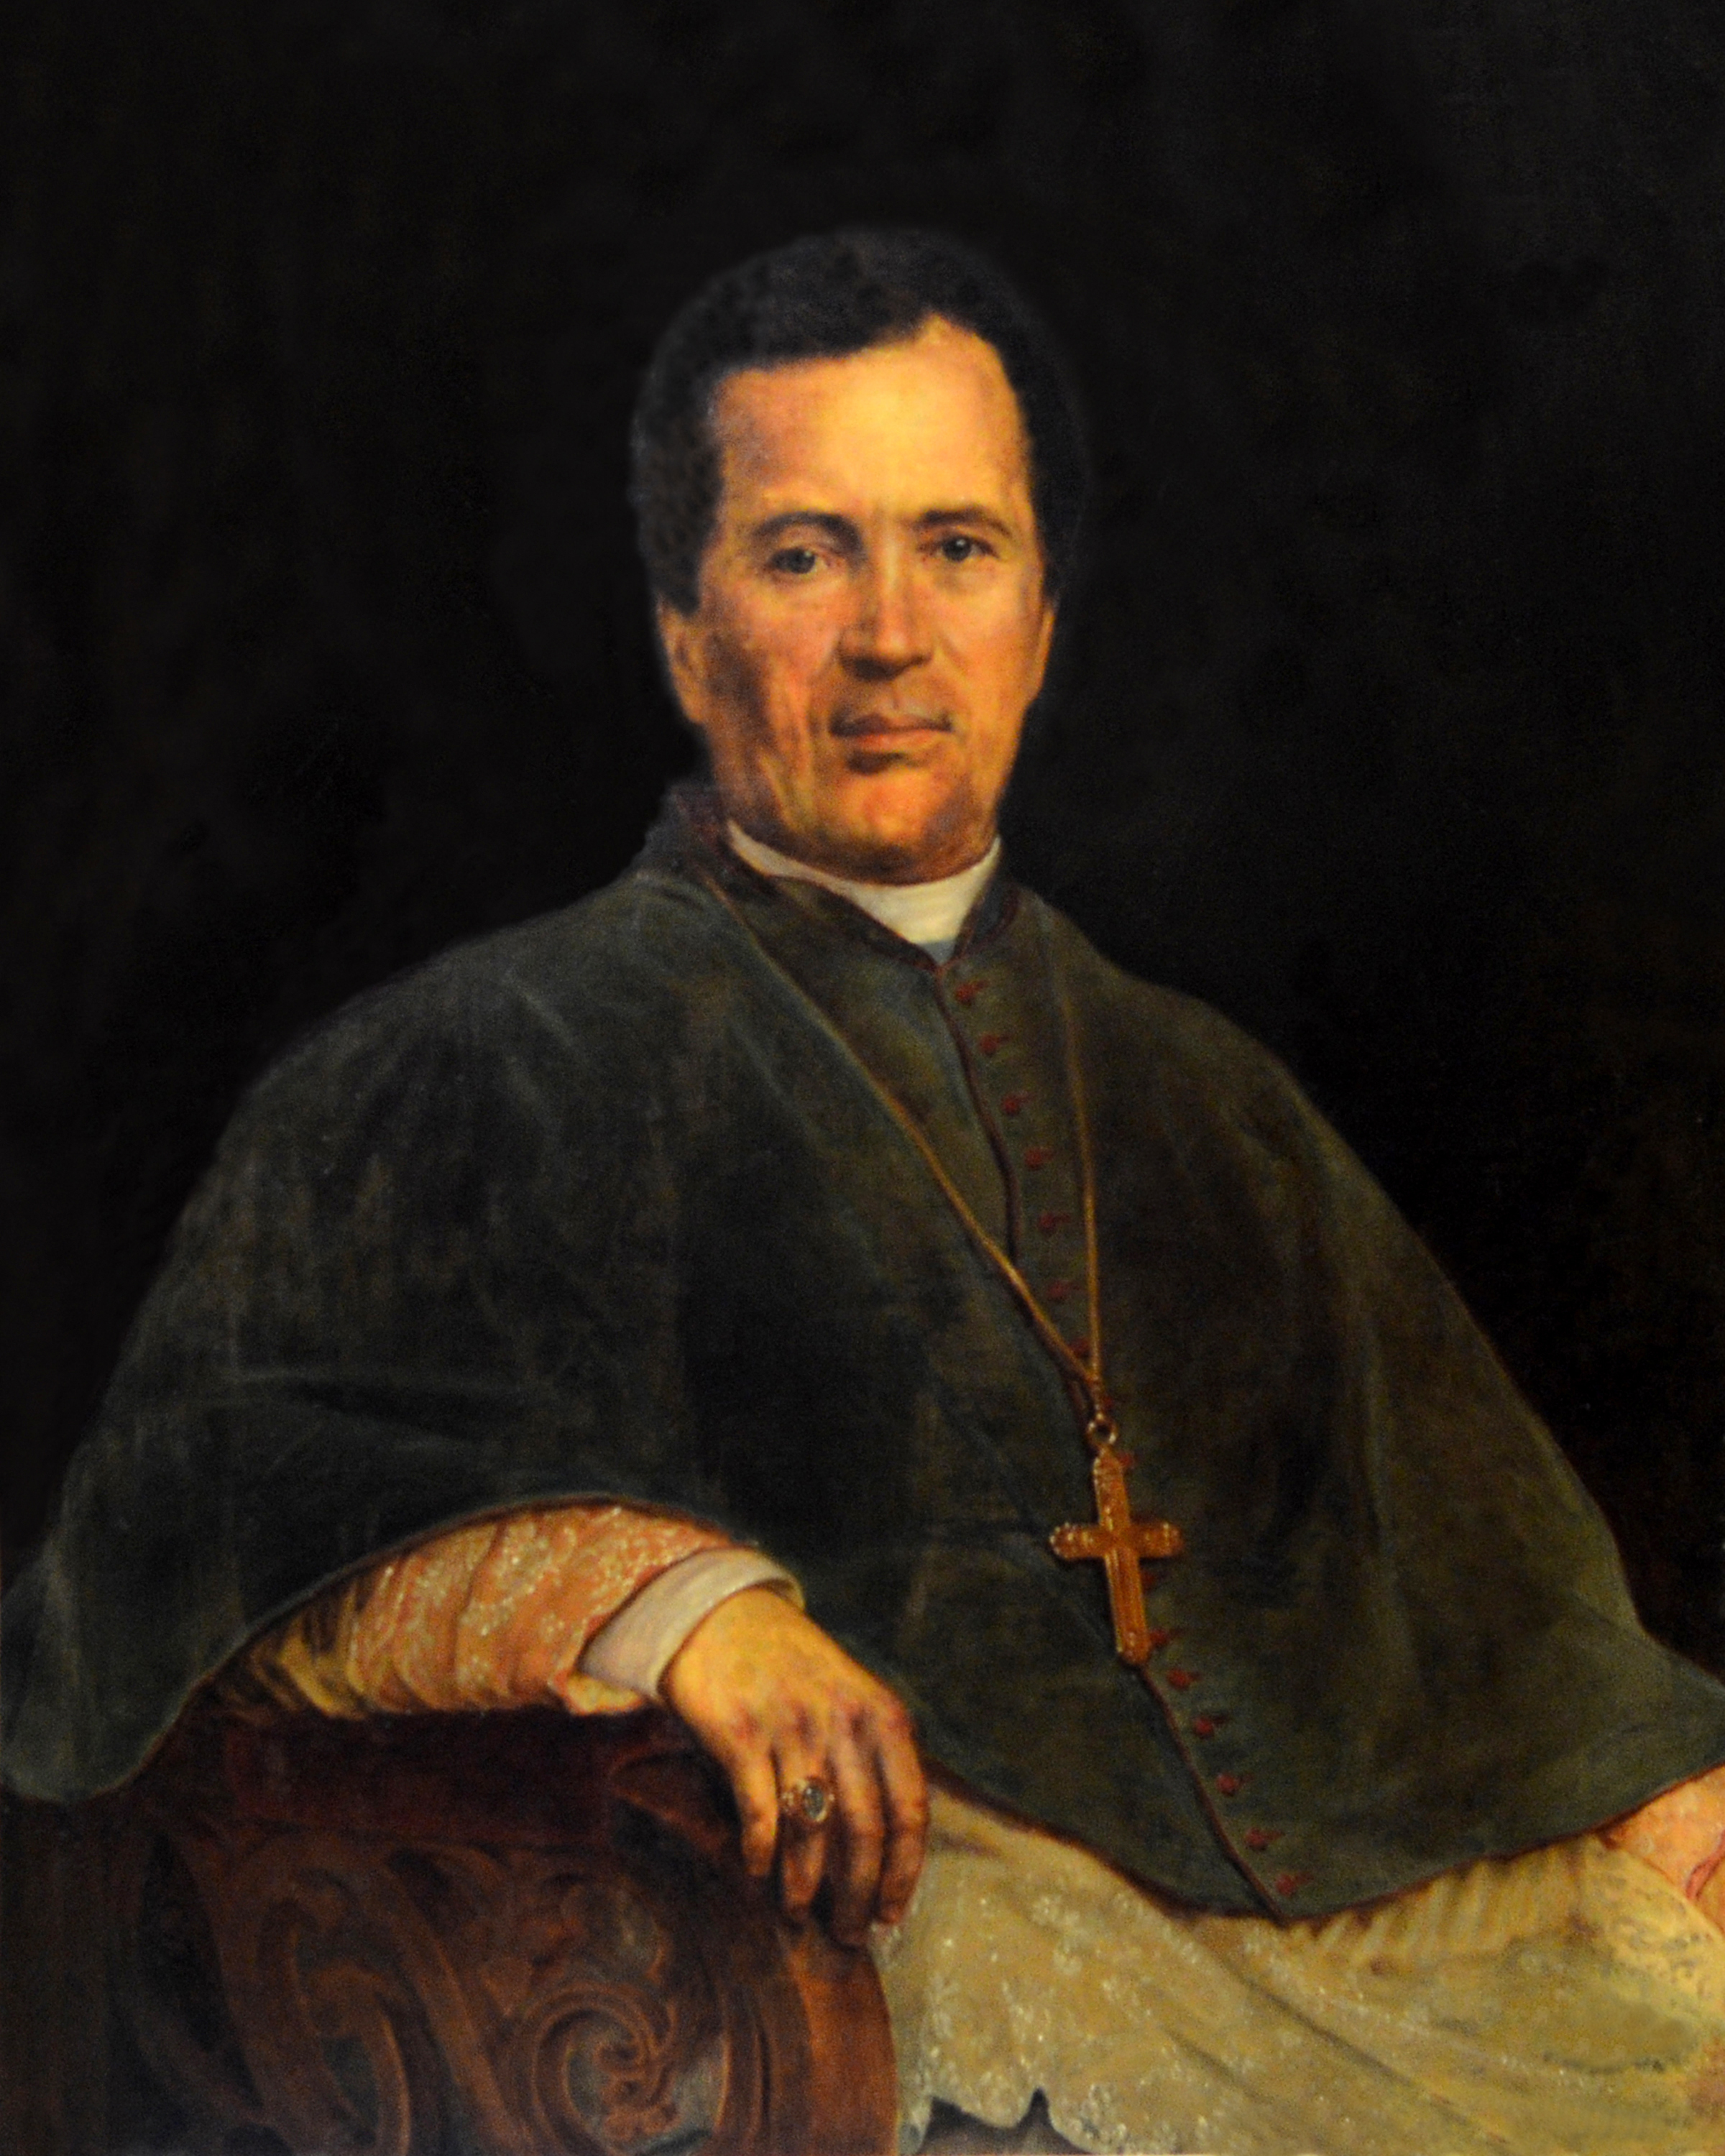 Image 1 - Bishop Farrell